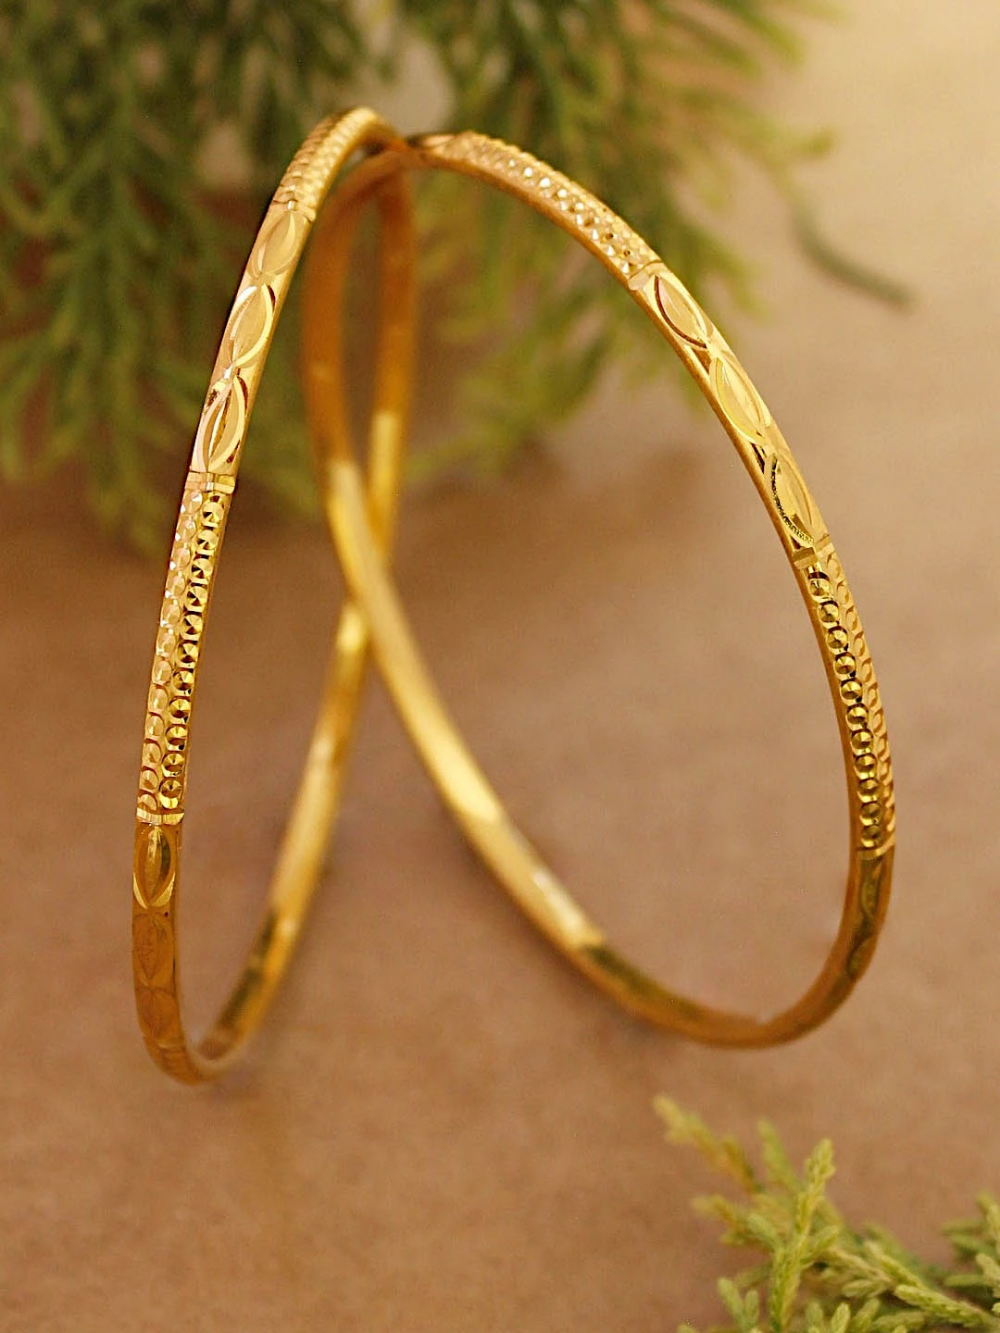 Avismaya Gold Plated Daily Use Thin Bangles – Jumkey Fashion Jewellery